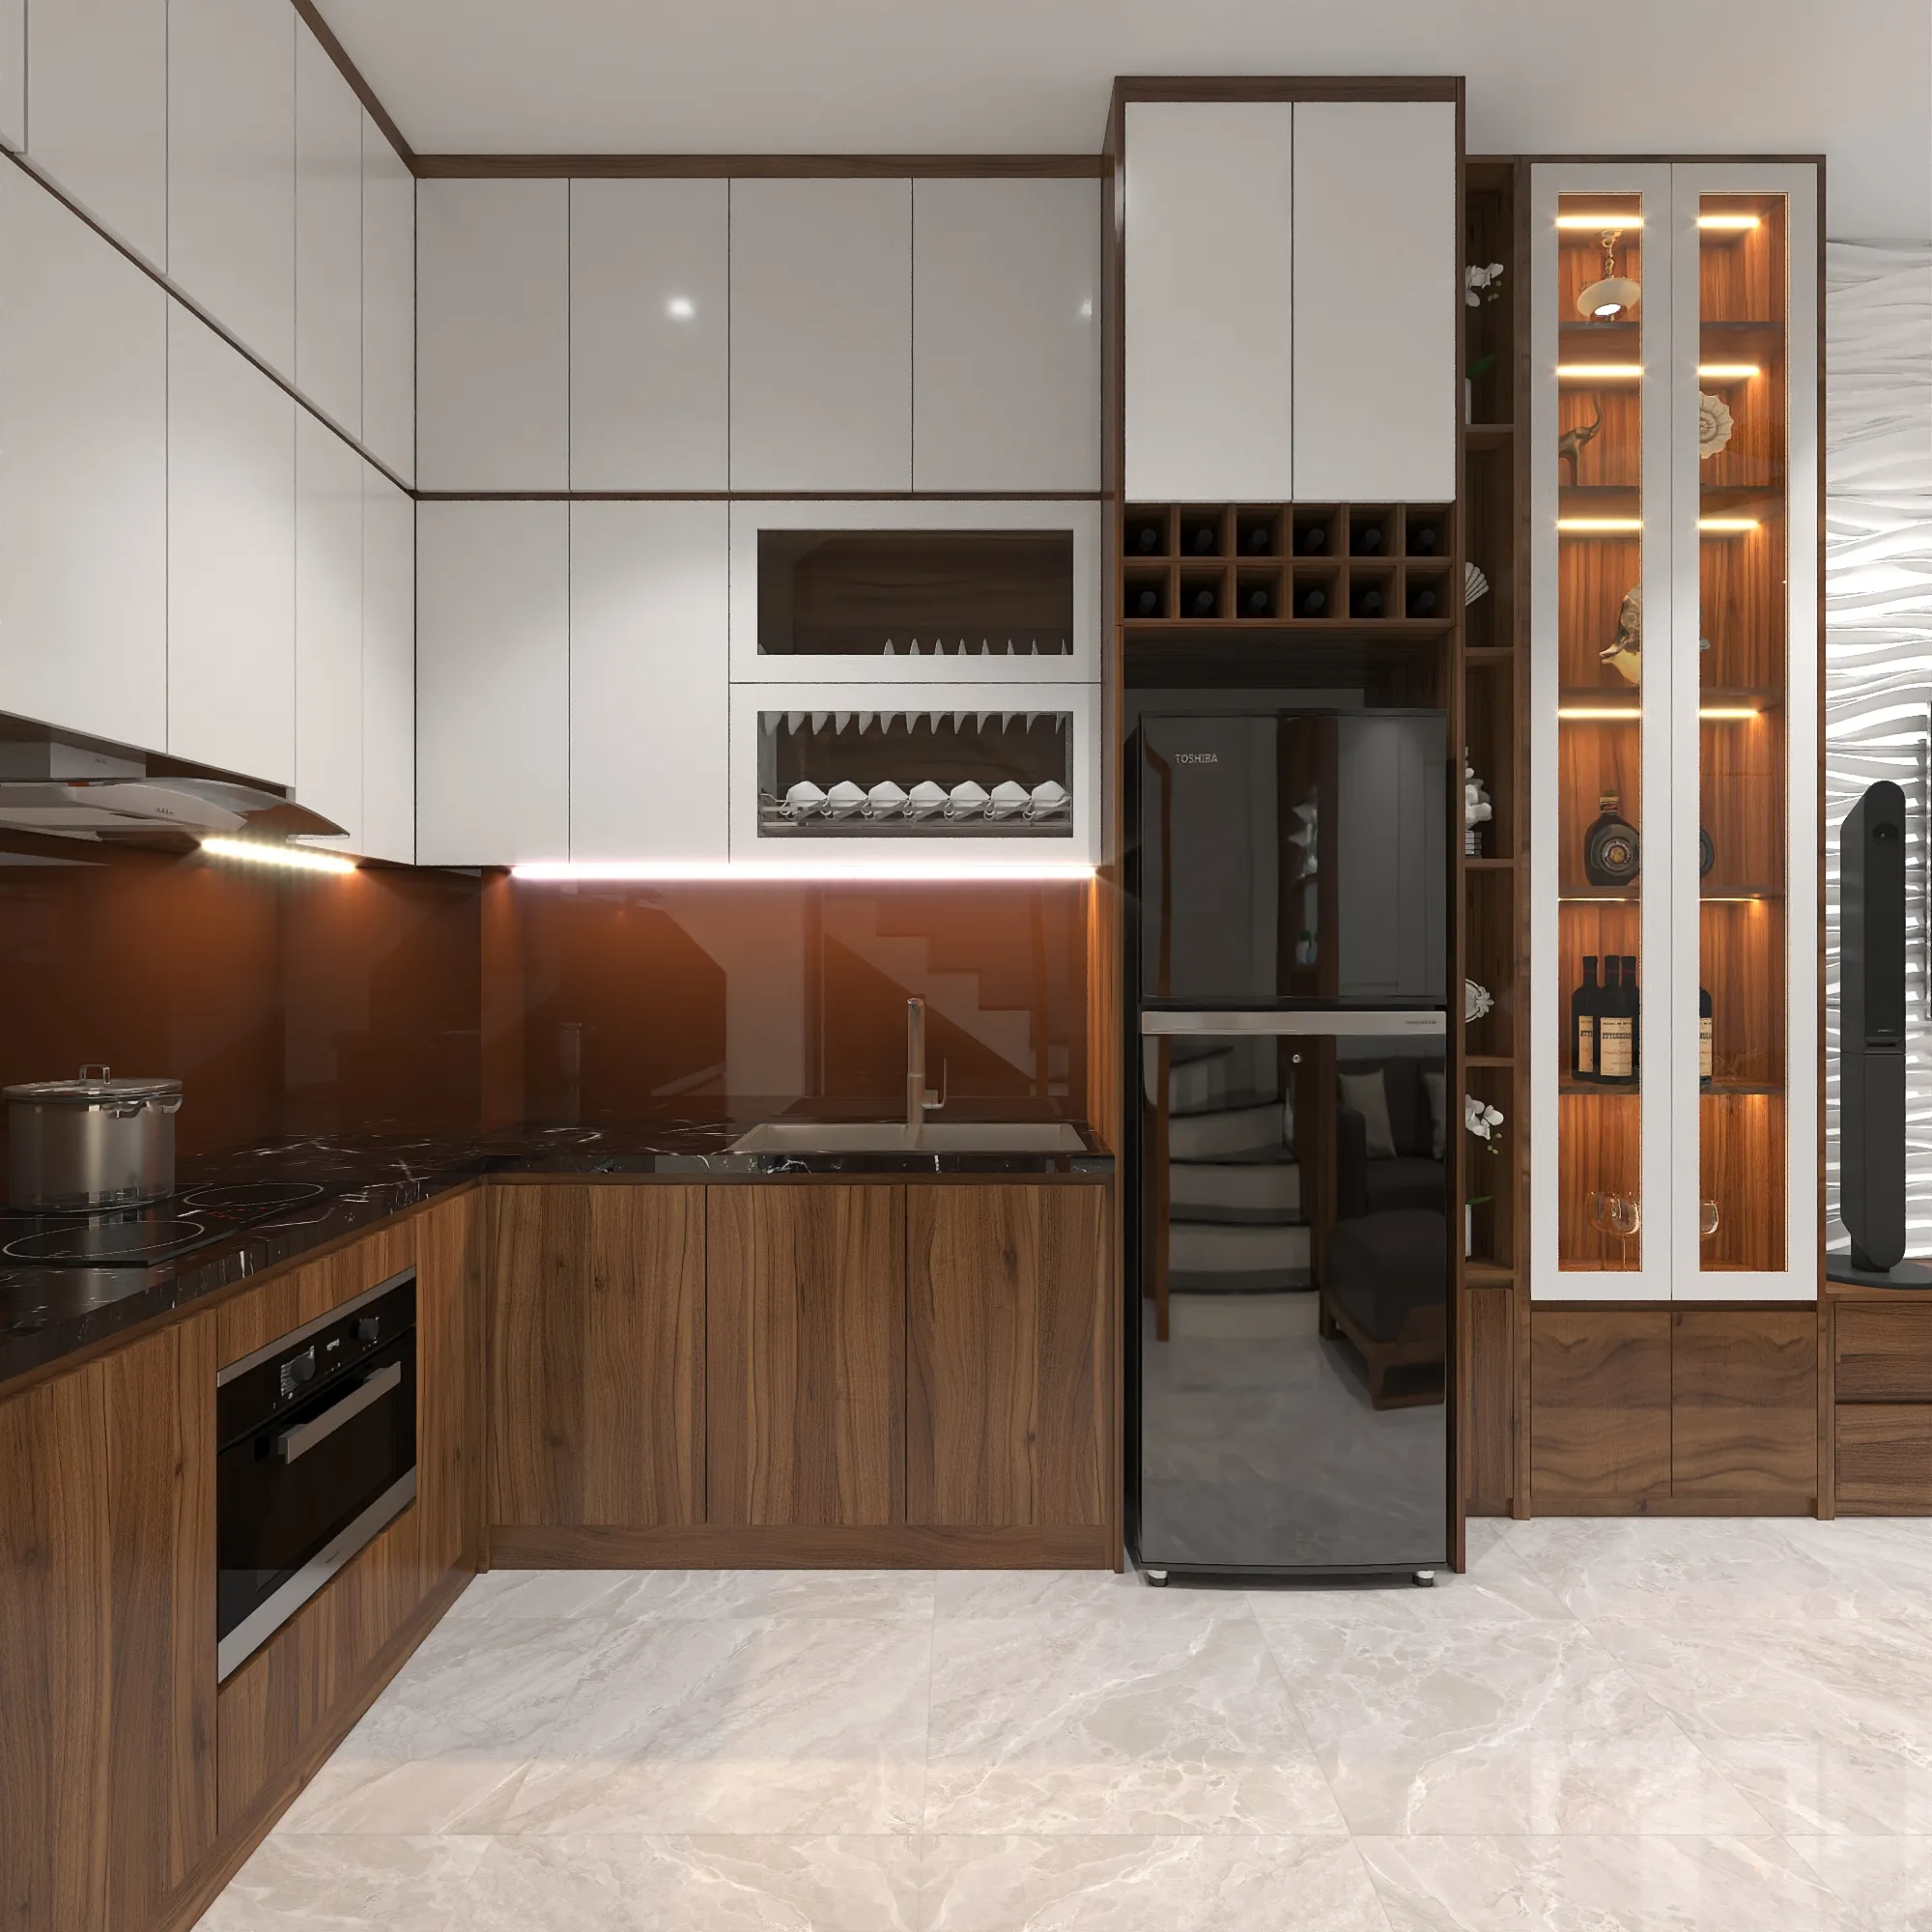 Chọn tủ bếp treo nếu muốn thiết kế bếp nhà cấp 4 thoáng và gọn gàng, tiết kiệm diện tích.